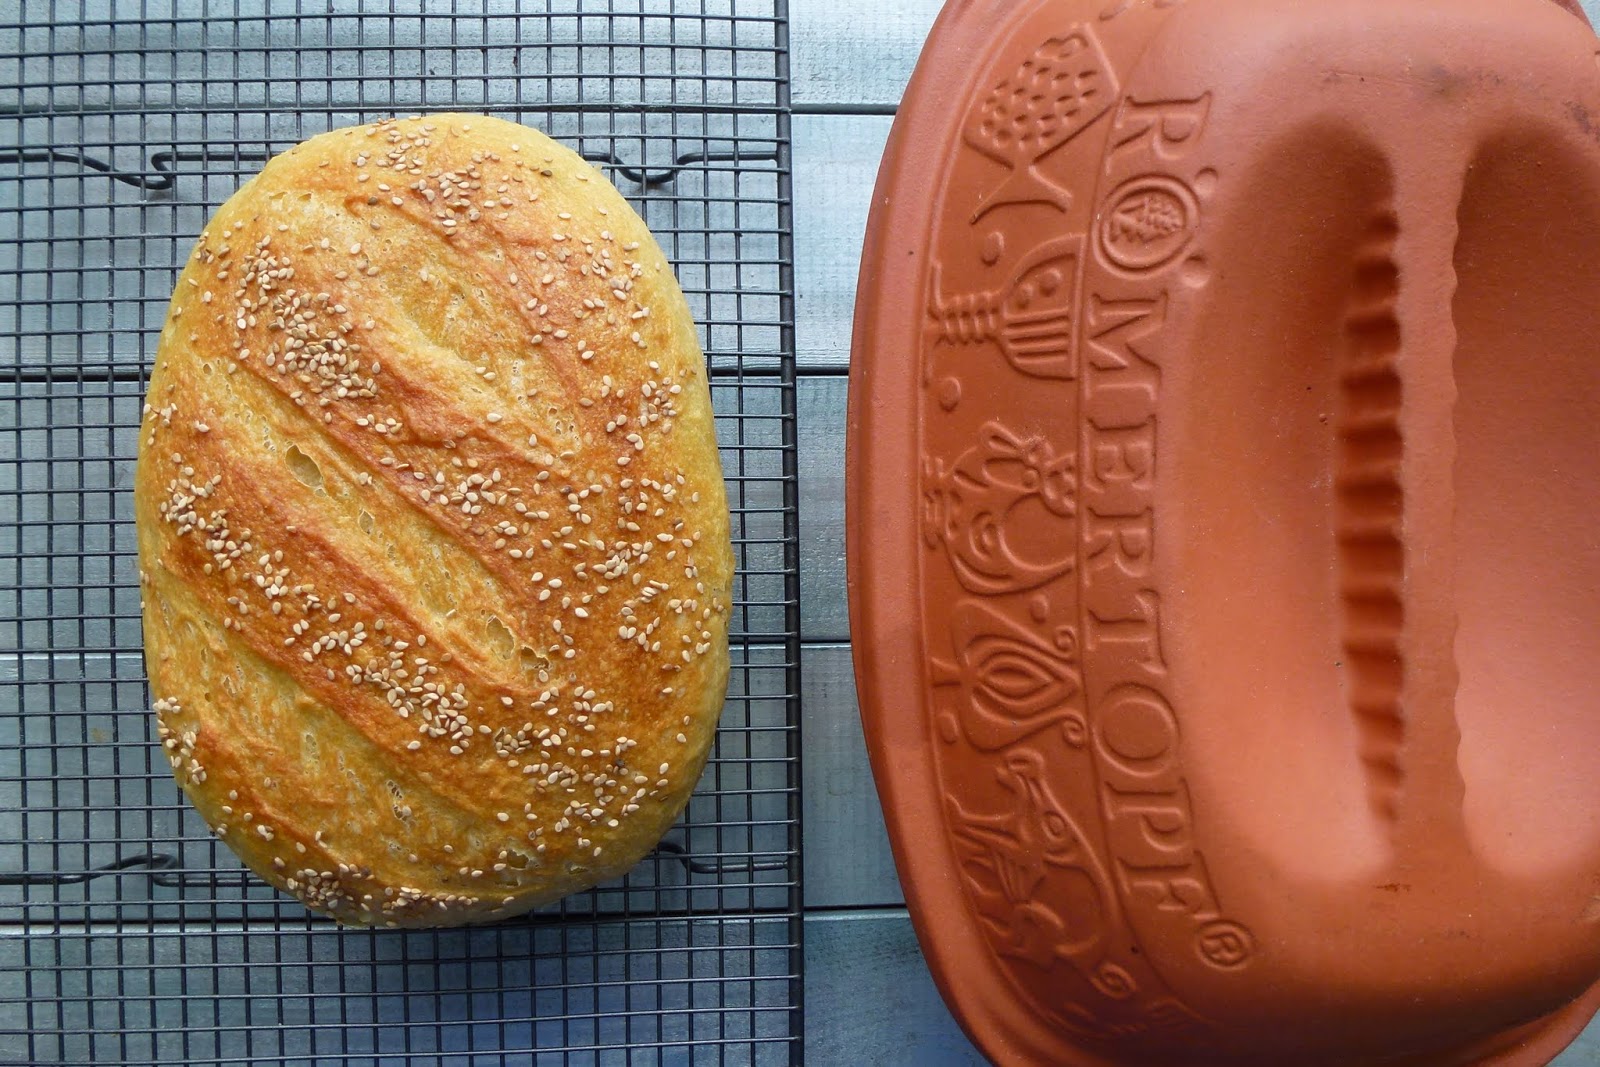 http://4.bp.blogspot.com/-cOfgMxpqJK8/U9cRY1g3KmI/AAAAAAAAKnc/XDq-9QtqWu0/s1600/semolina+bread+baked+in+a+clay+baker.JPG